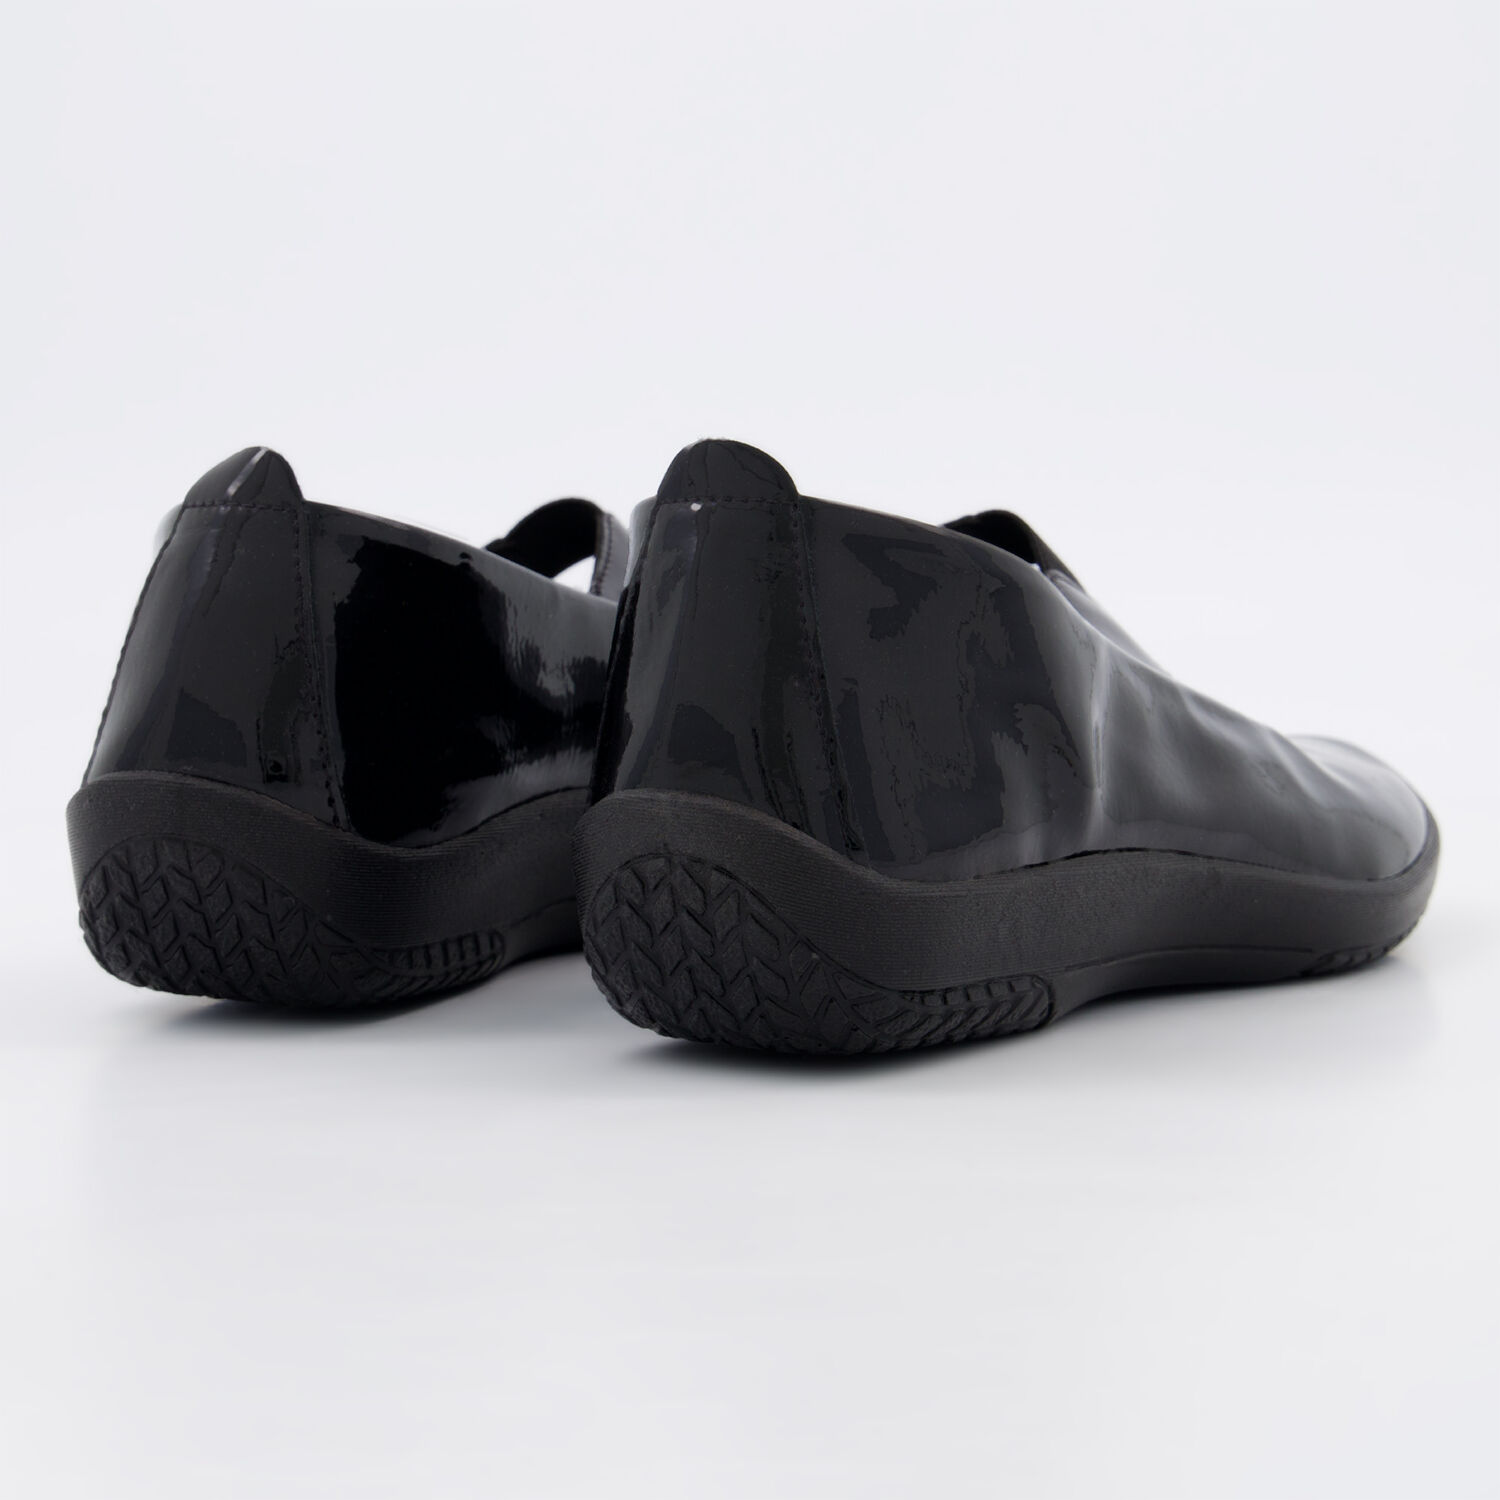 Black Patent Shoes - TK Maxx UK